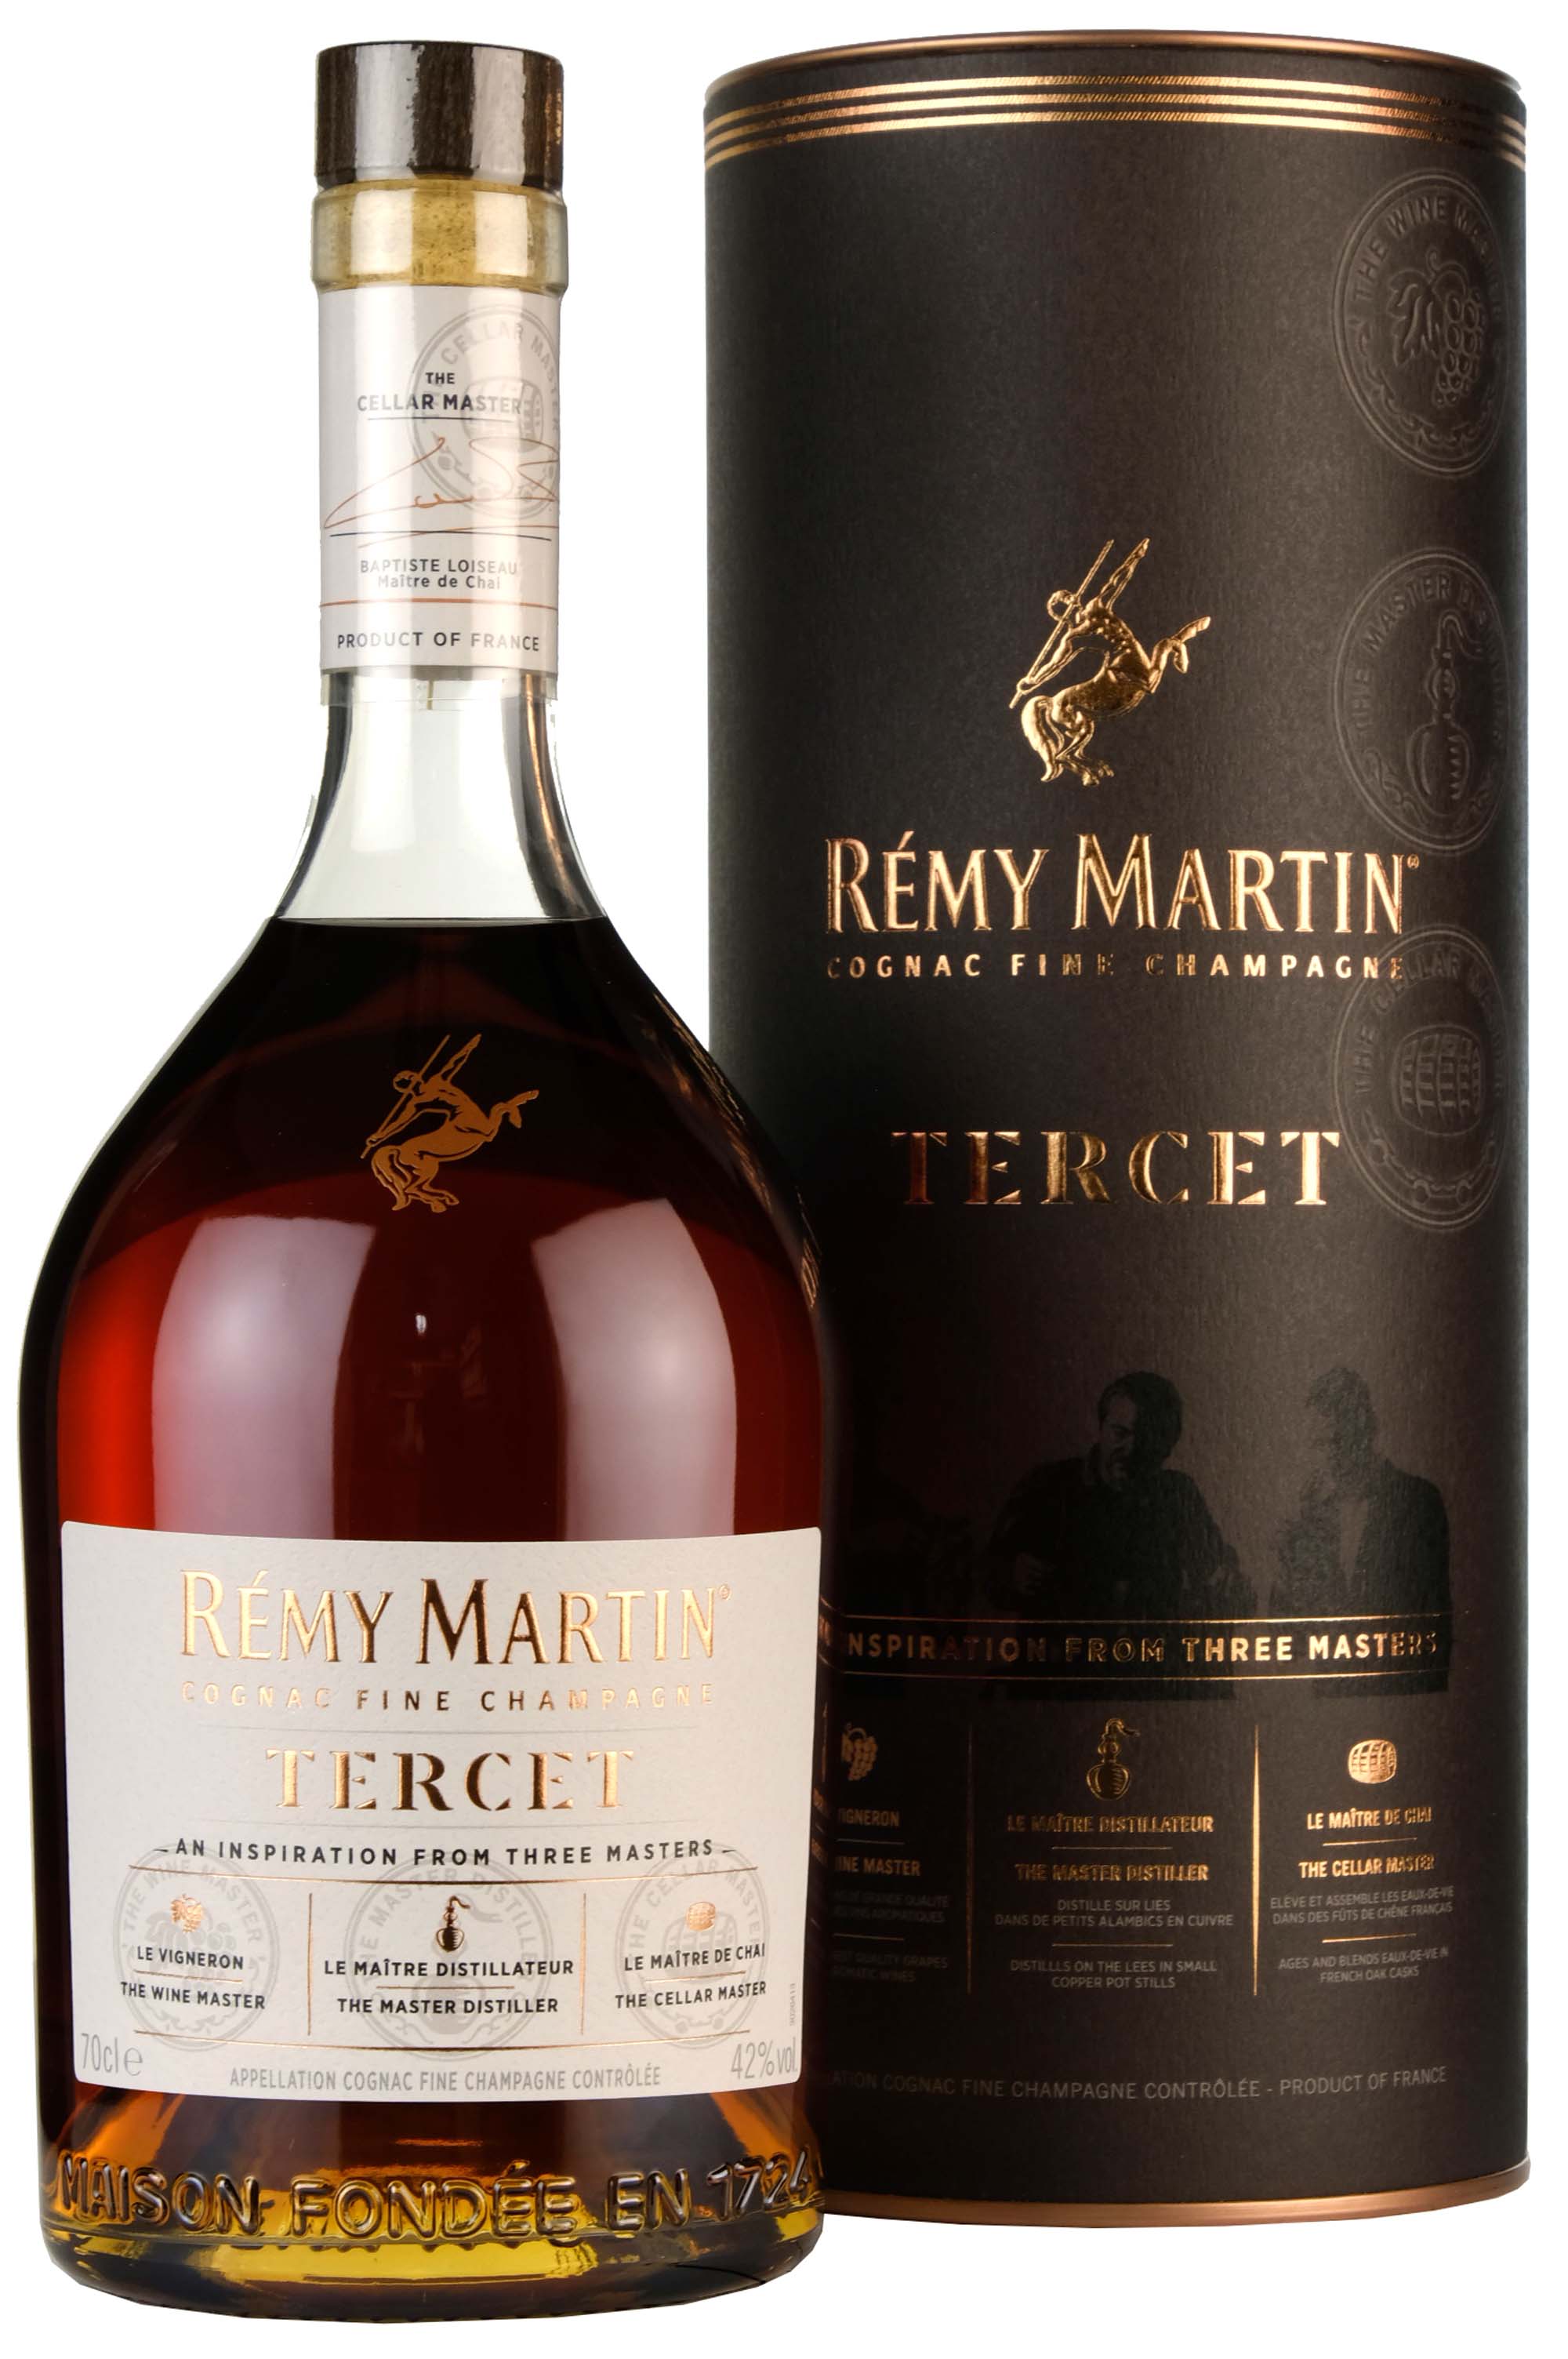 Remy Martin Club de Remy Martin Fine Champagne Cognac 700ml